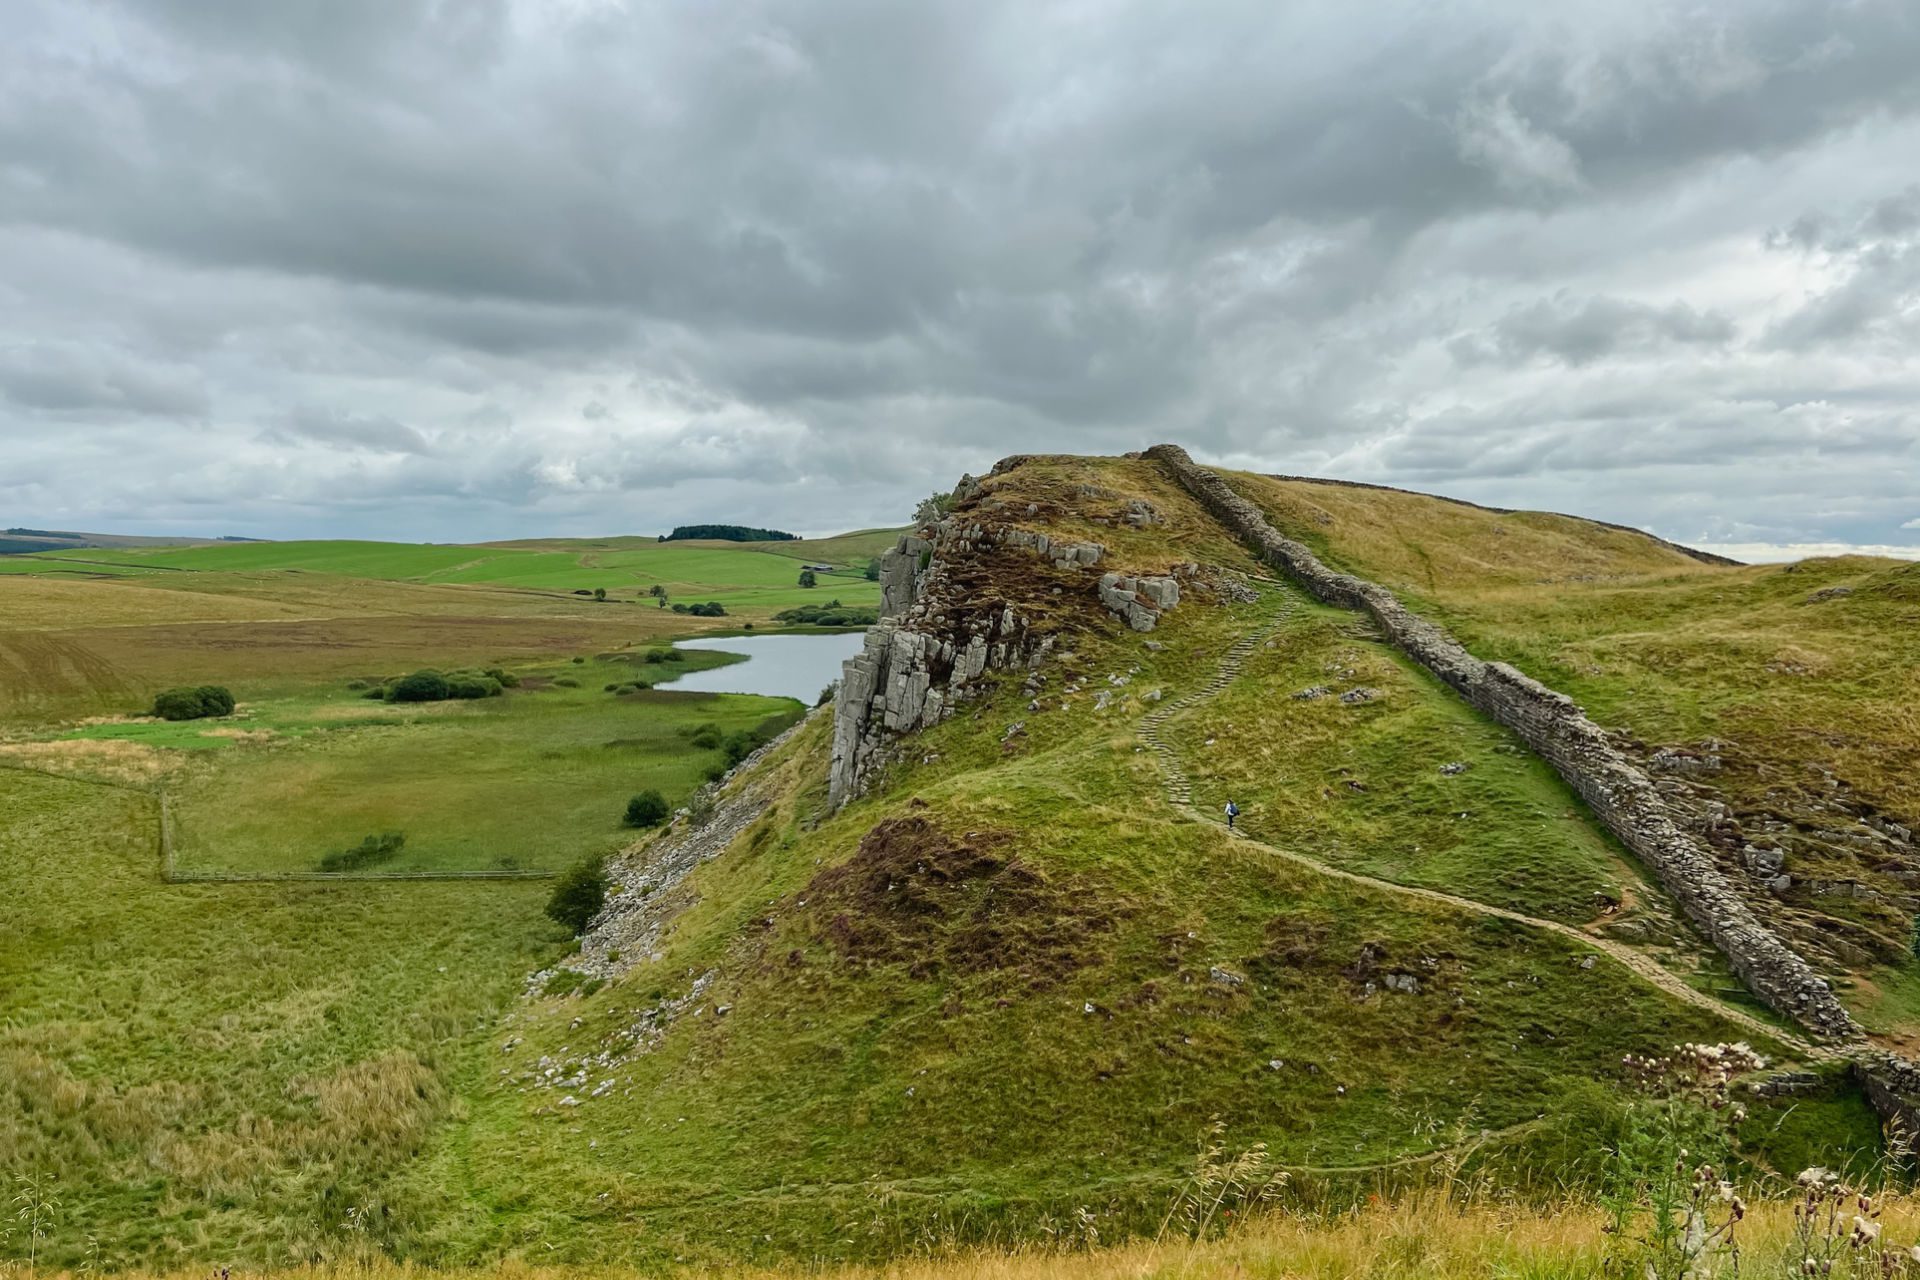 My Midlife Journey Walking Across England on Hadrian’s Wall Path